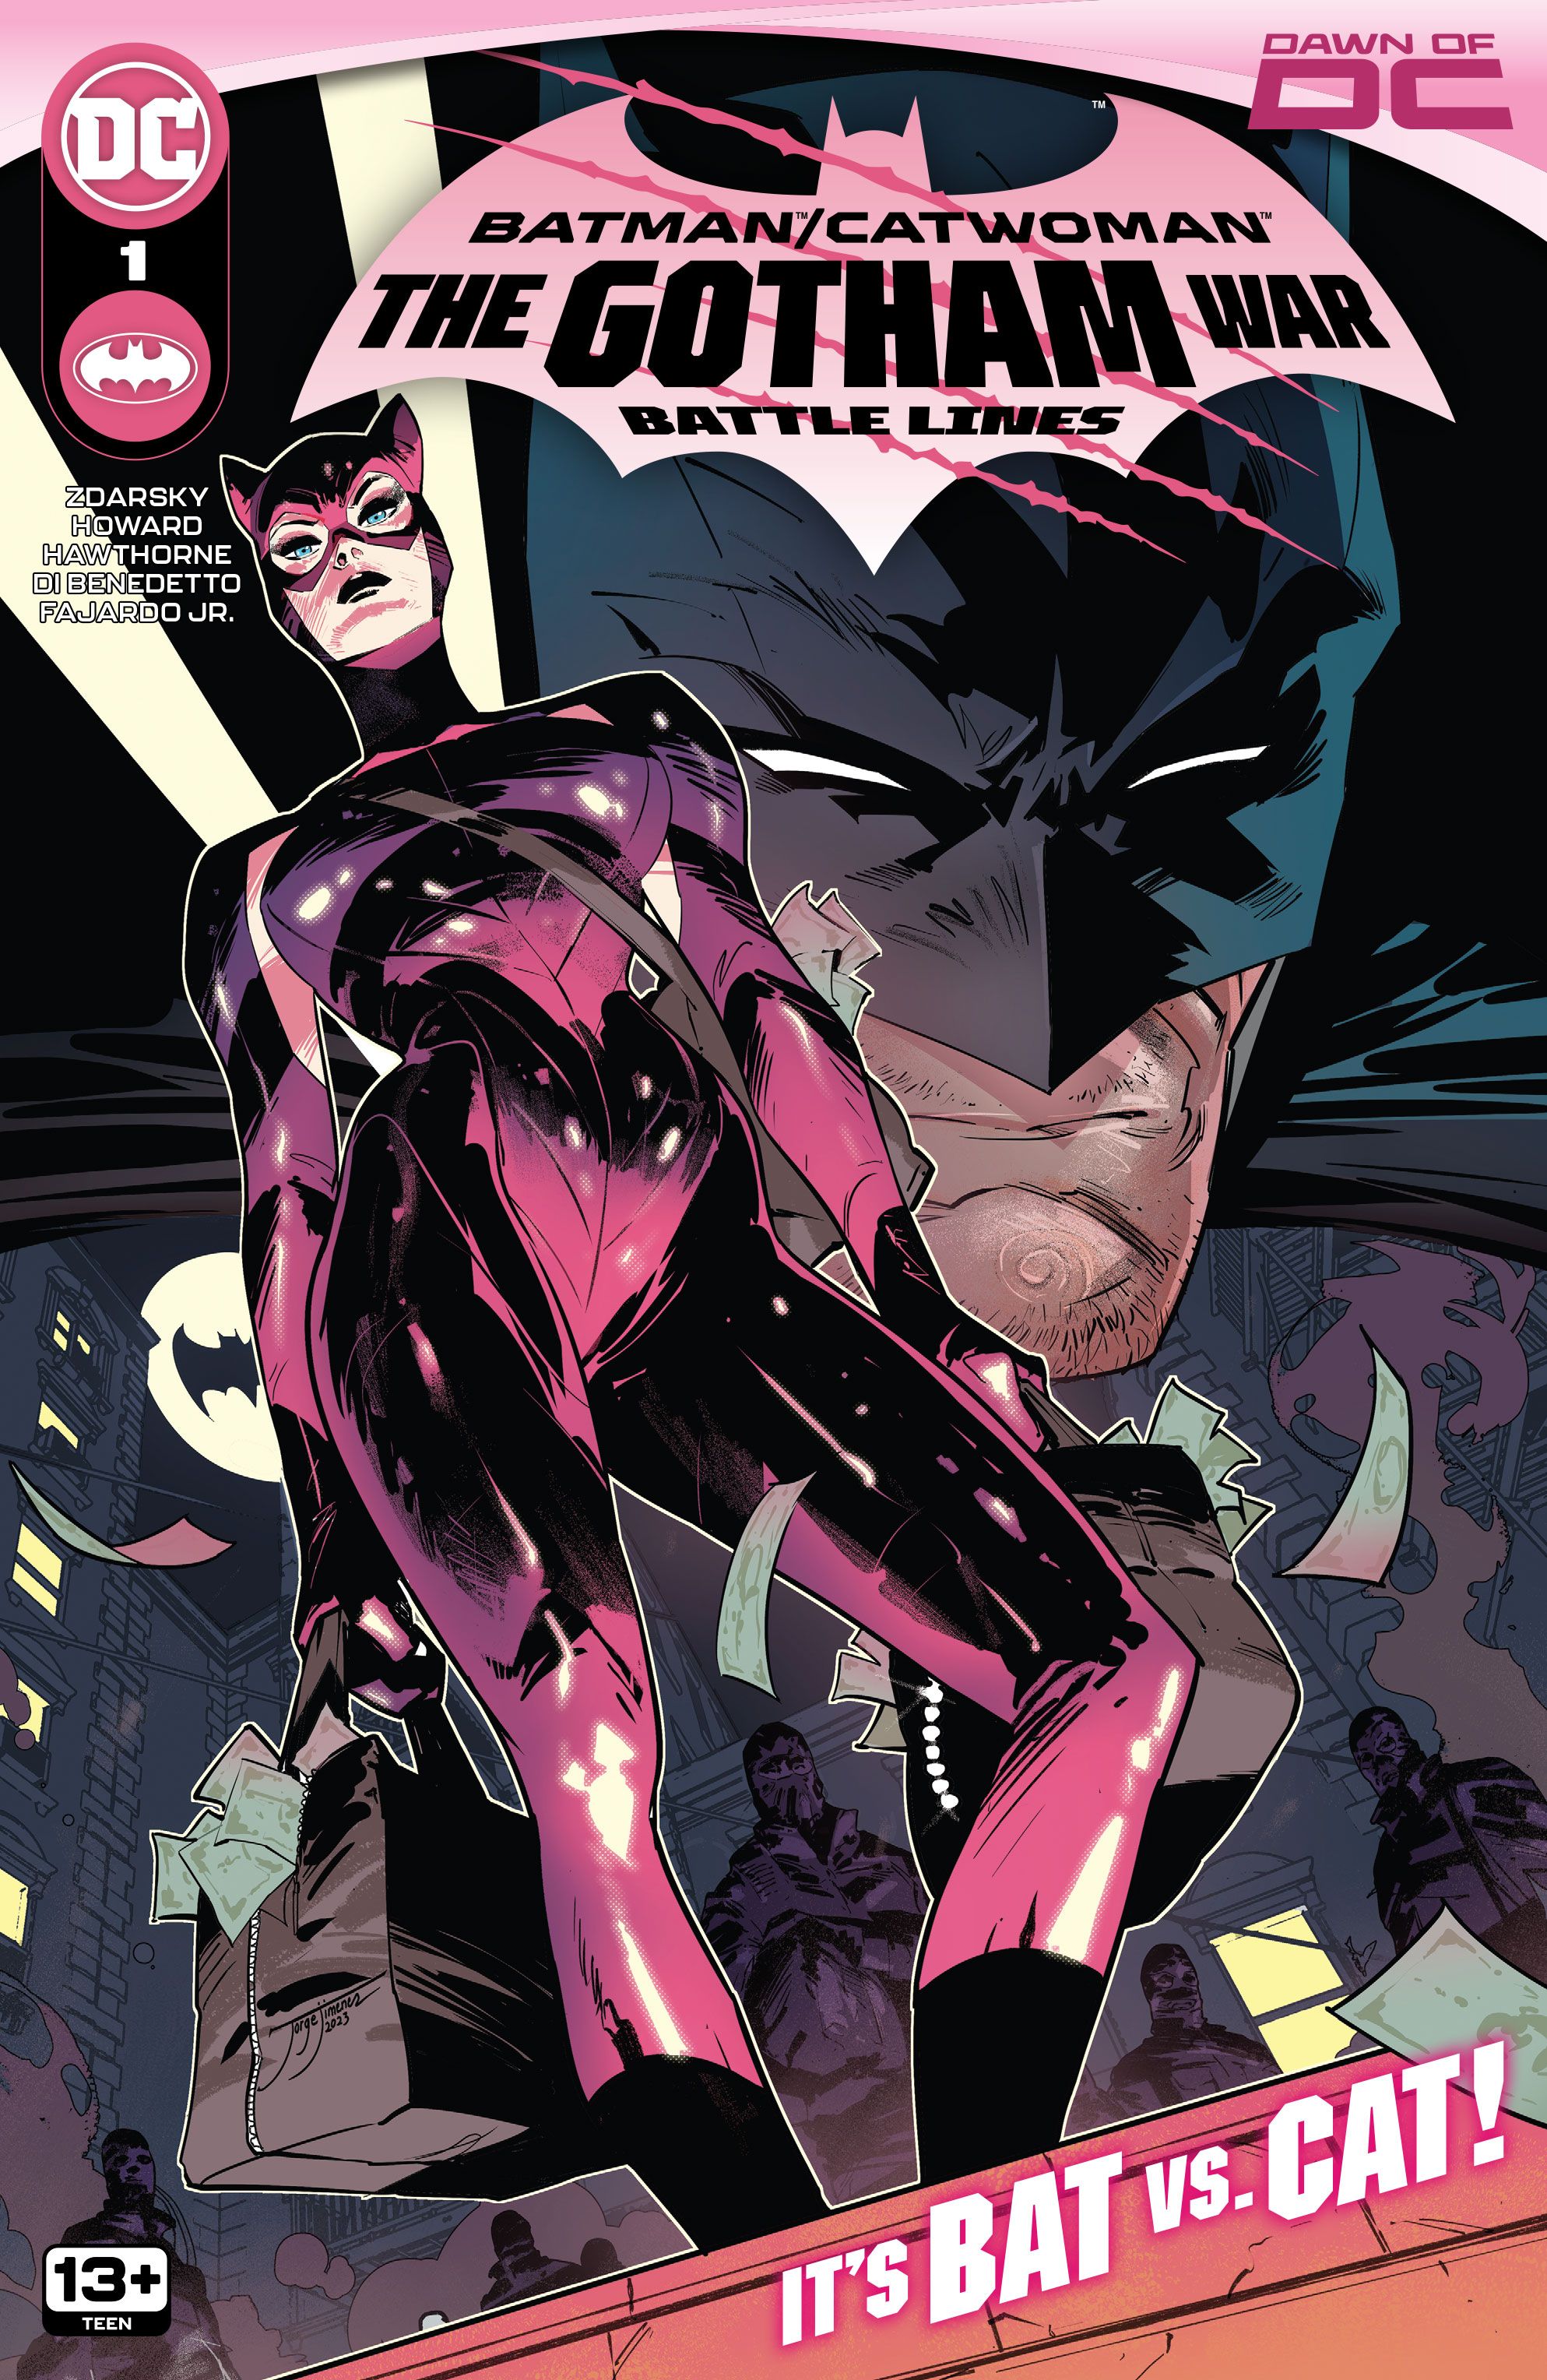 RESEÑA: Batman/Catwoman de DC: La Guerra de Gotham - Líneas de Batalla #1